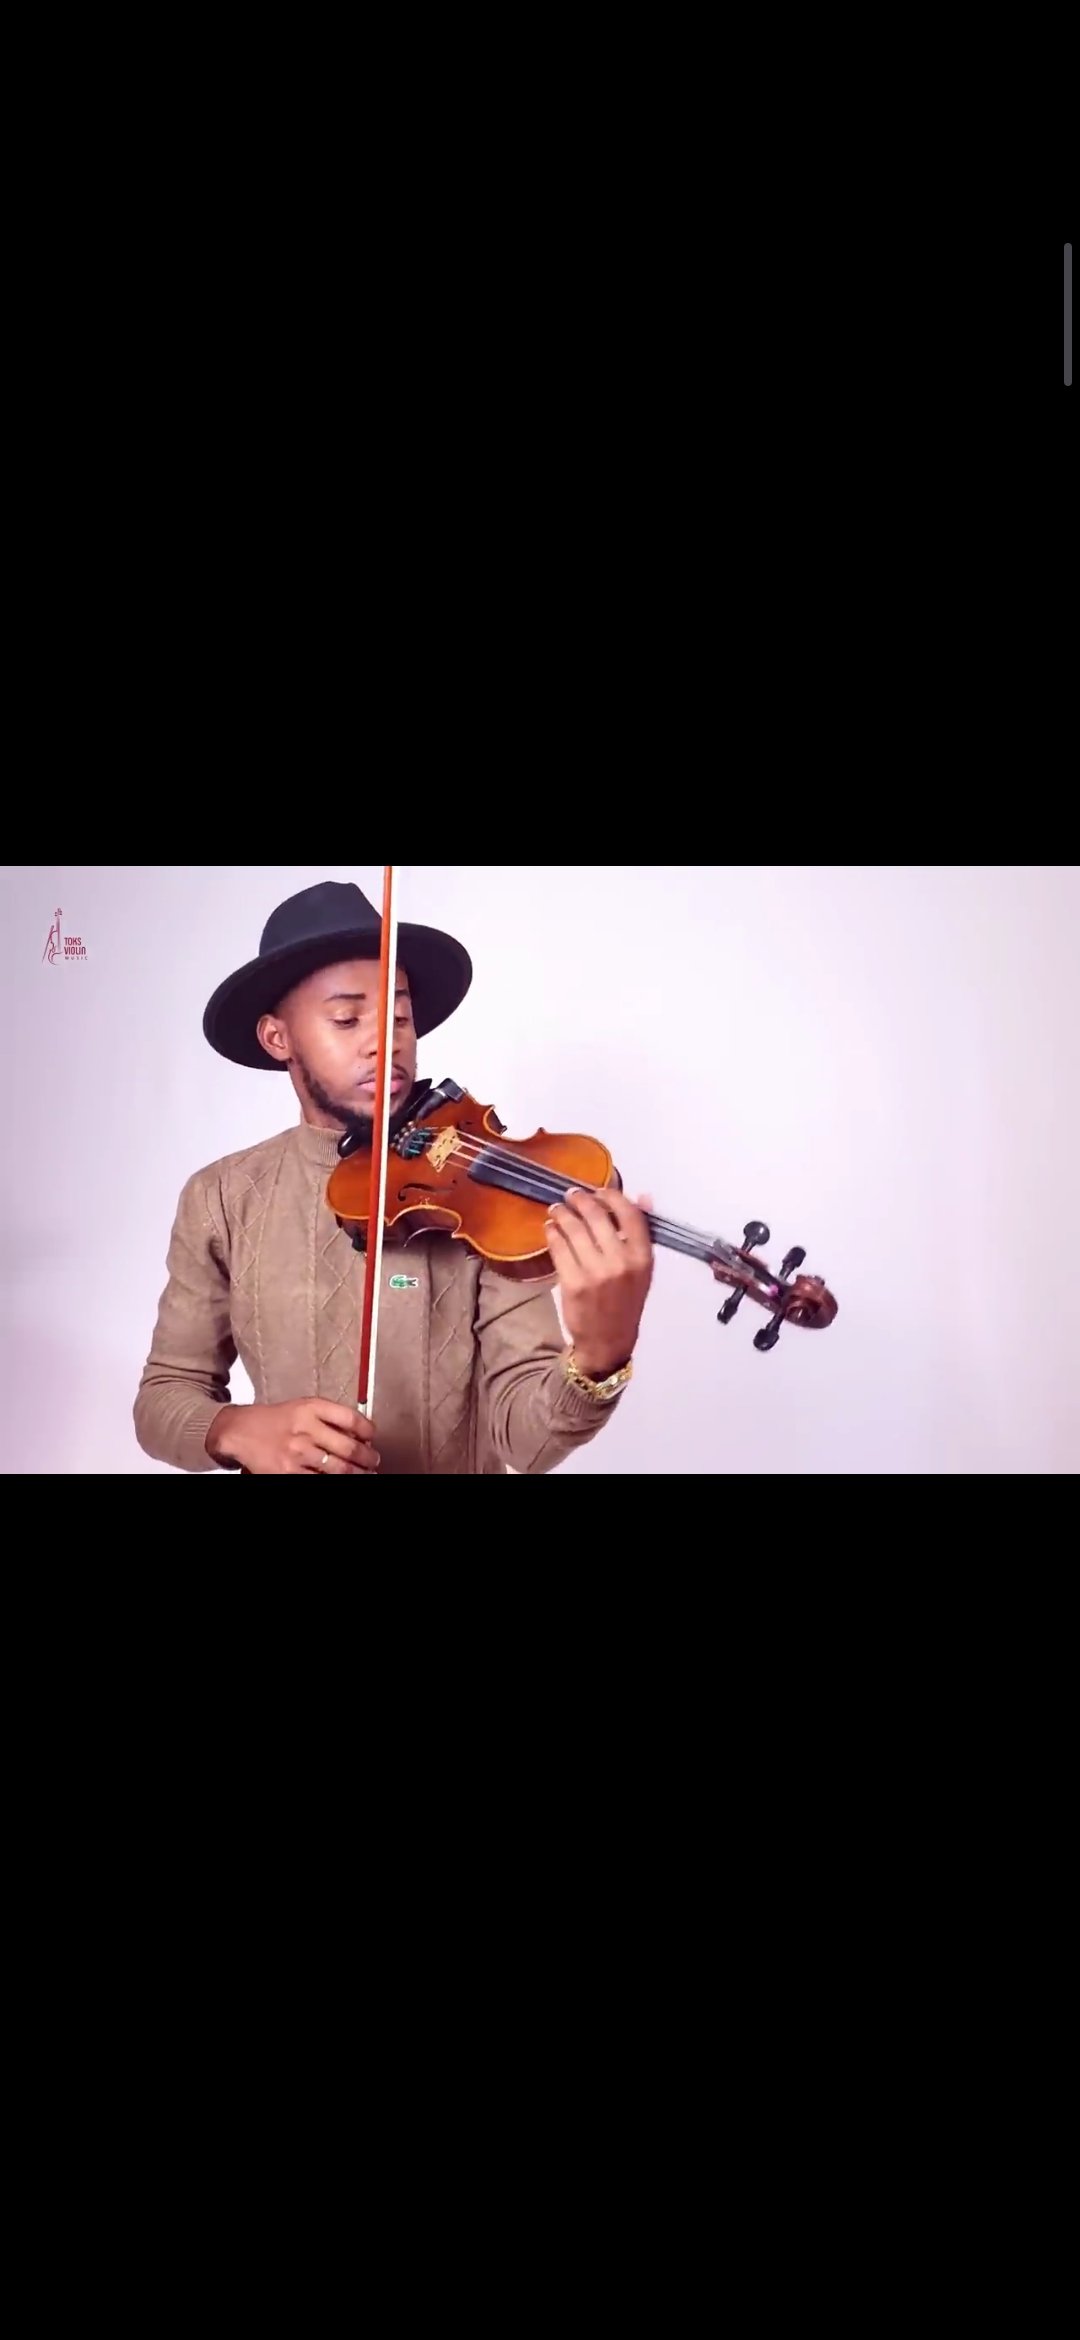 Rema - Calm down violin cover